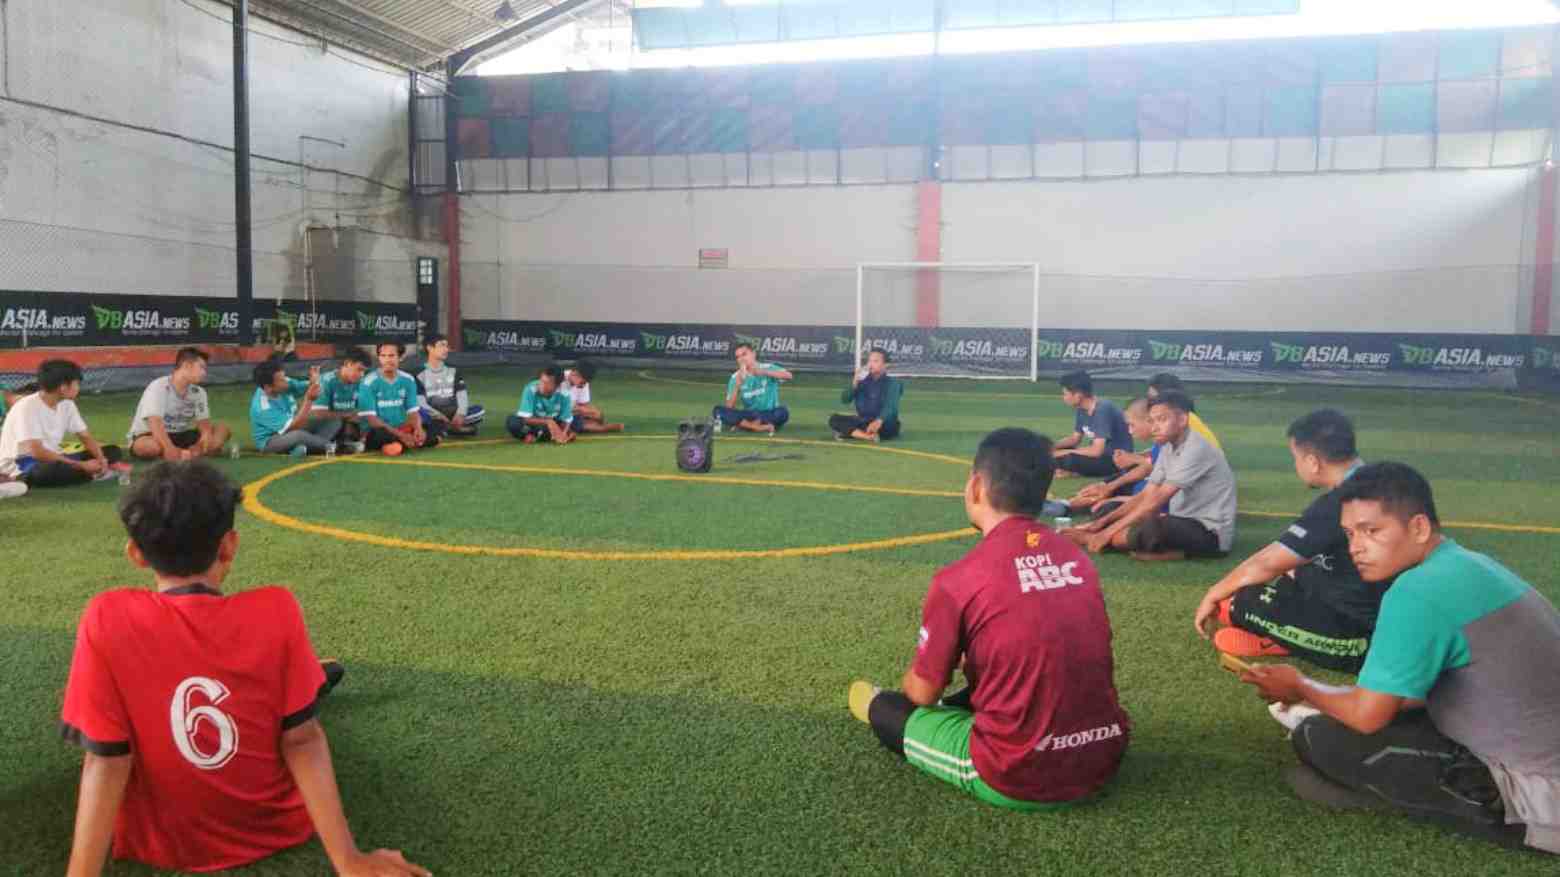 Unik, Puluhan Anak Muda Gandrungi Kajian Islam di Lapangan Futsal